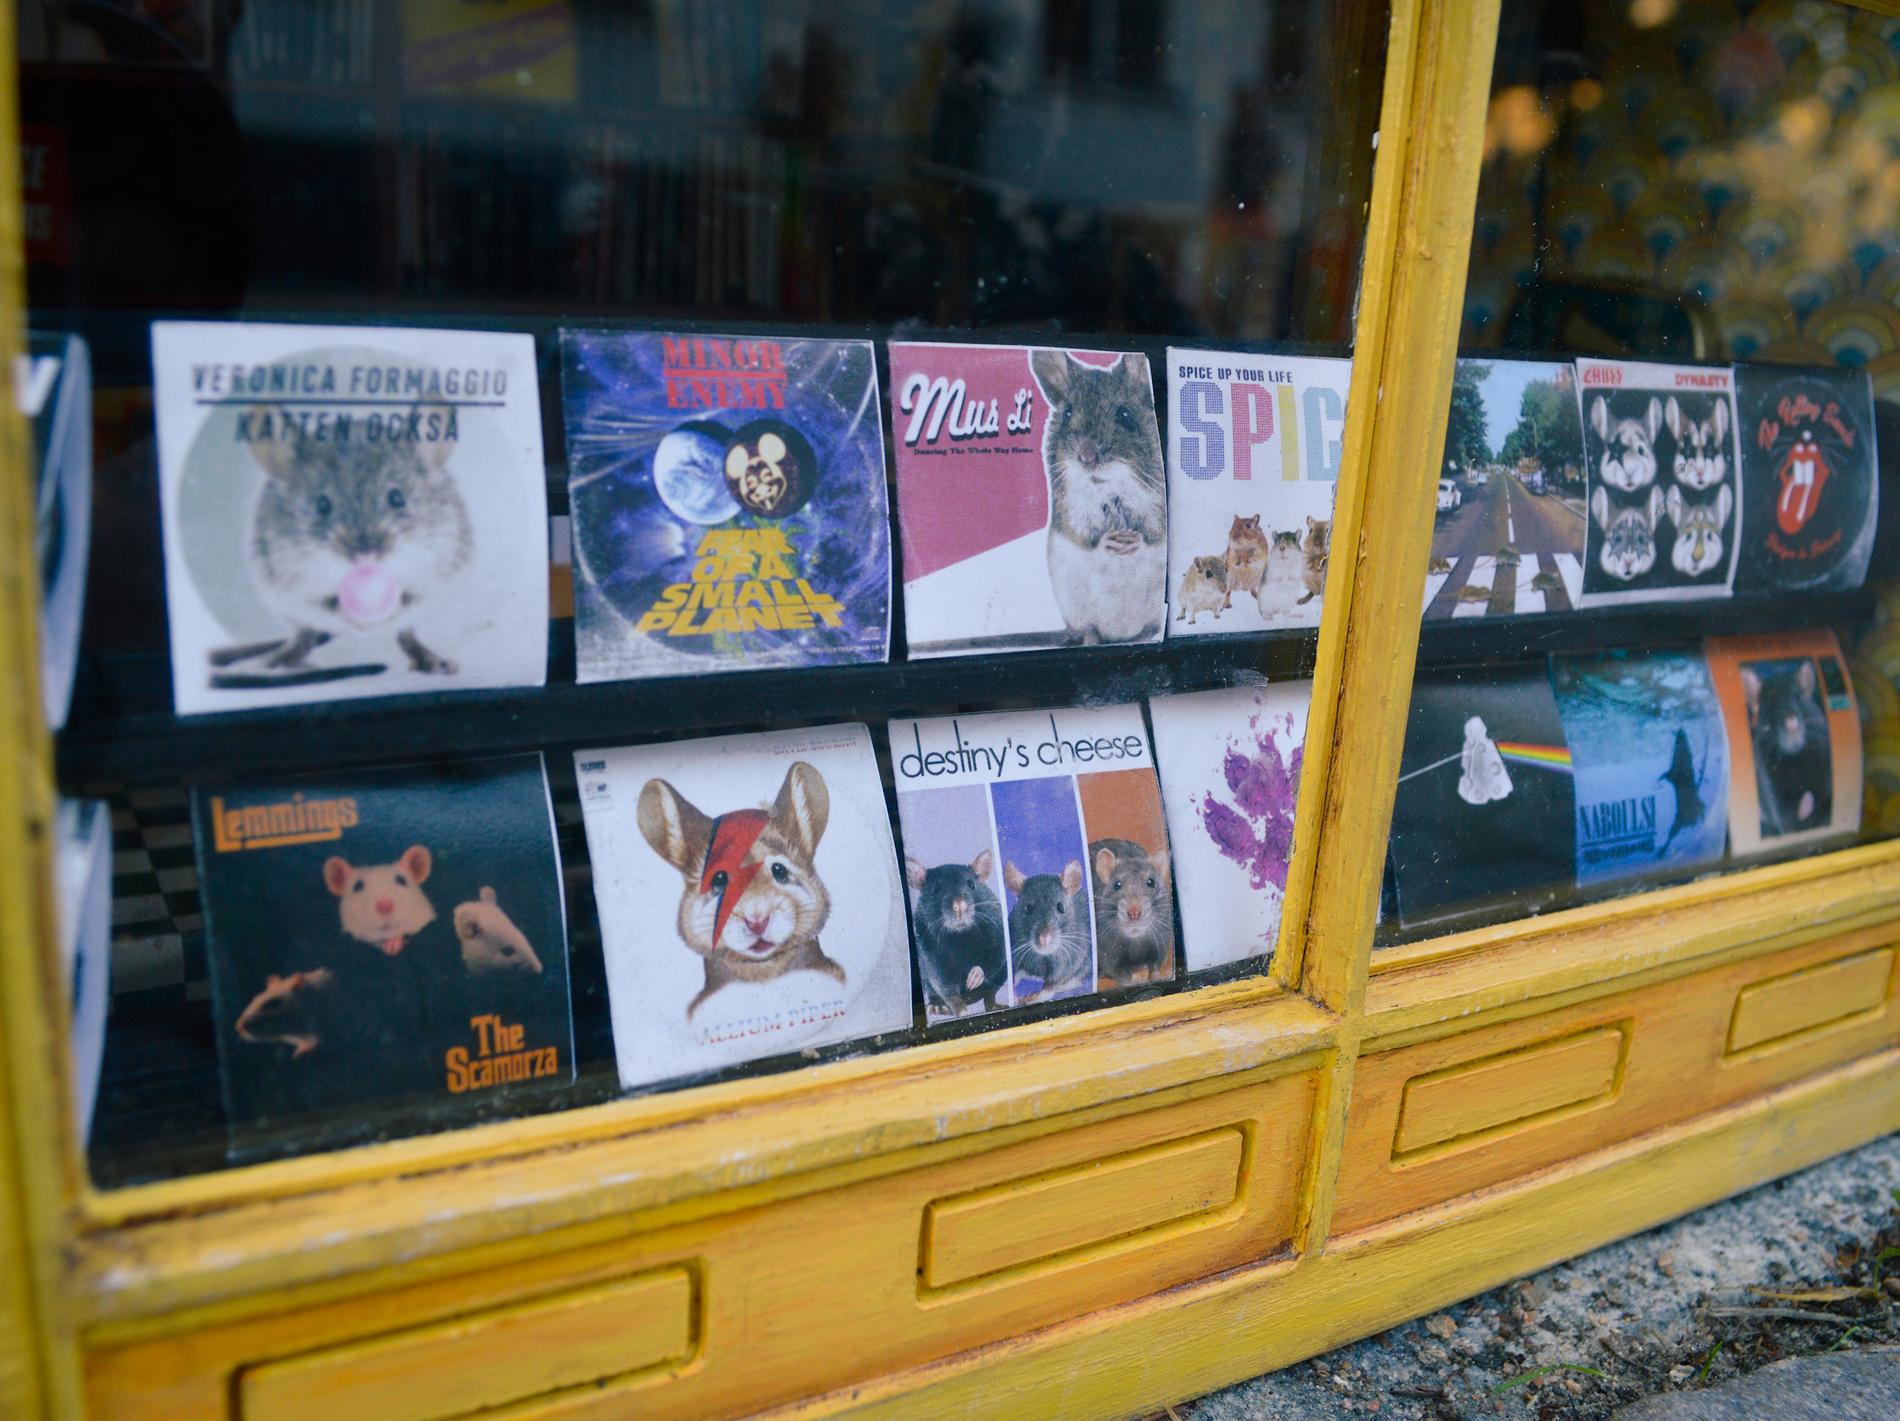 I skyltfönstret finns bland annat Veronica Formaggios nya platta ”Katten också”.